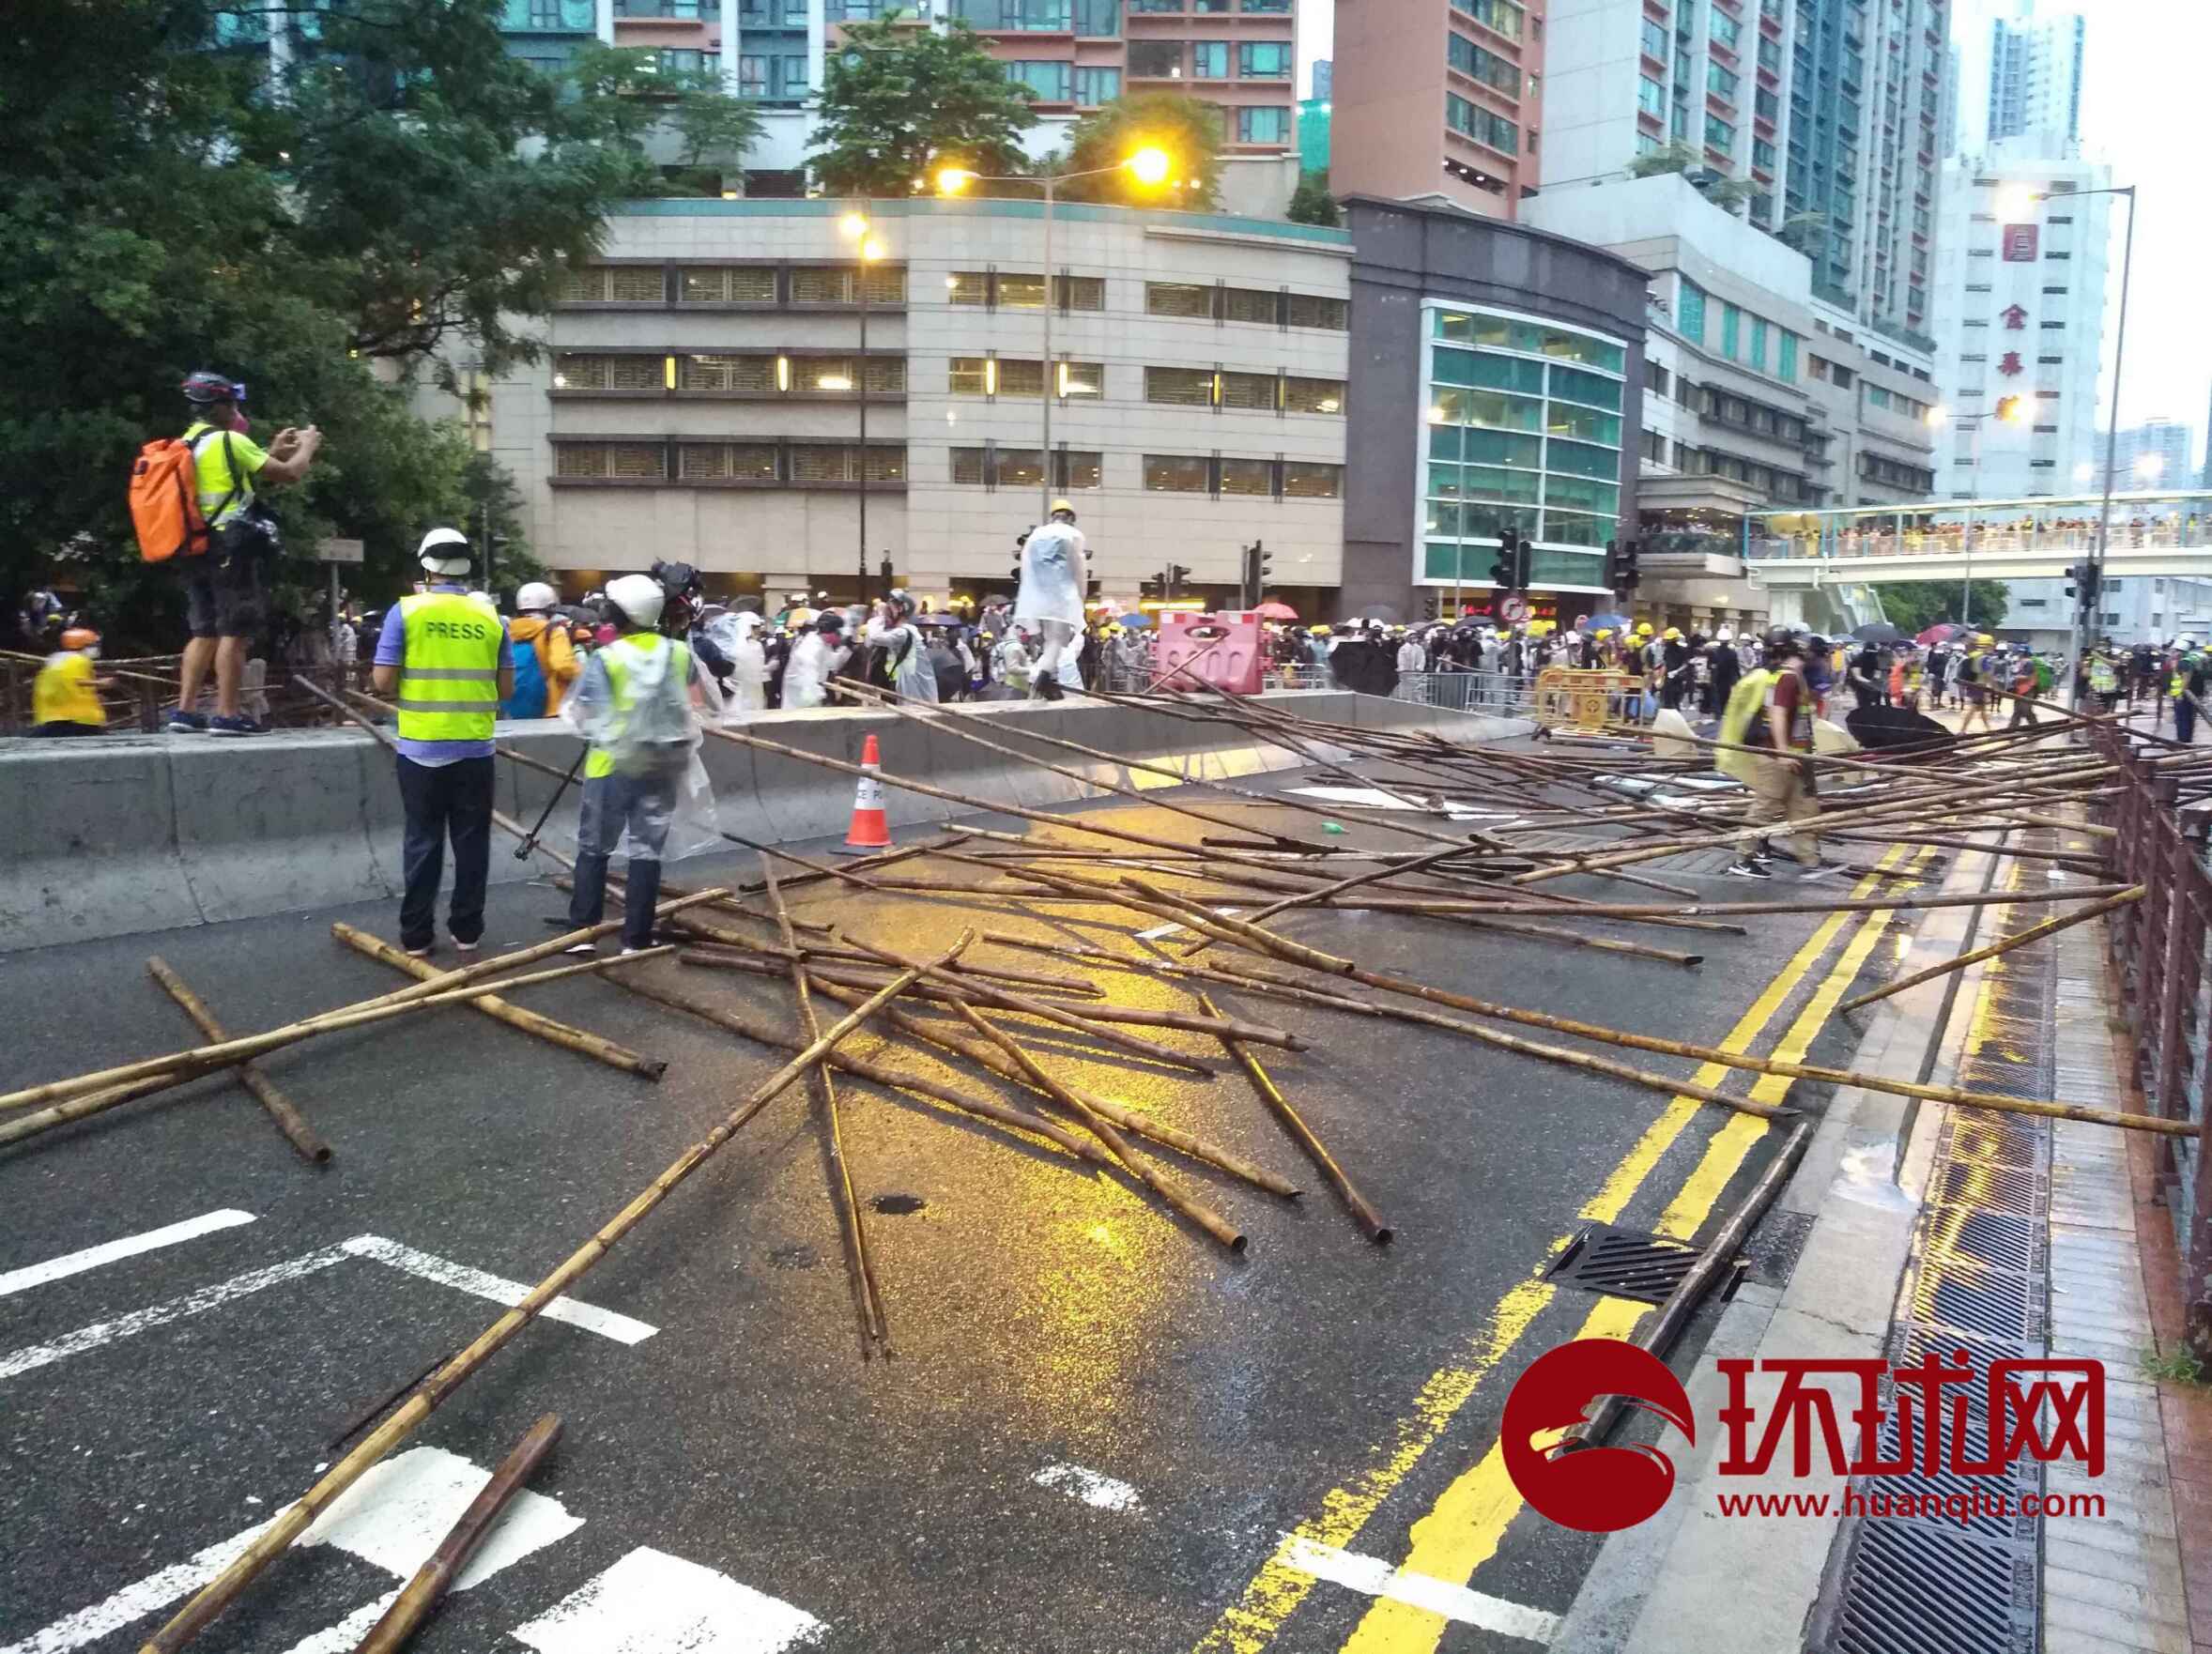 扔汽油弹,扔砖头,照激光…荃湾示威活动升级,36名暴徒被捕